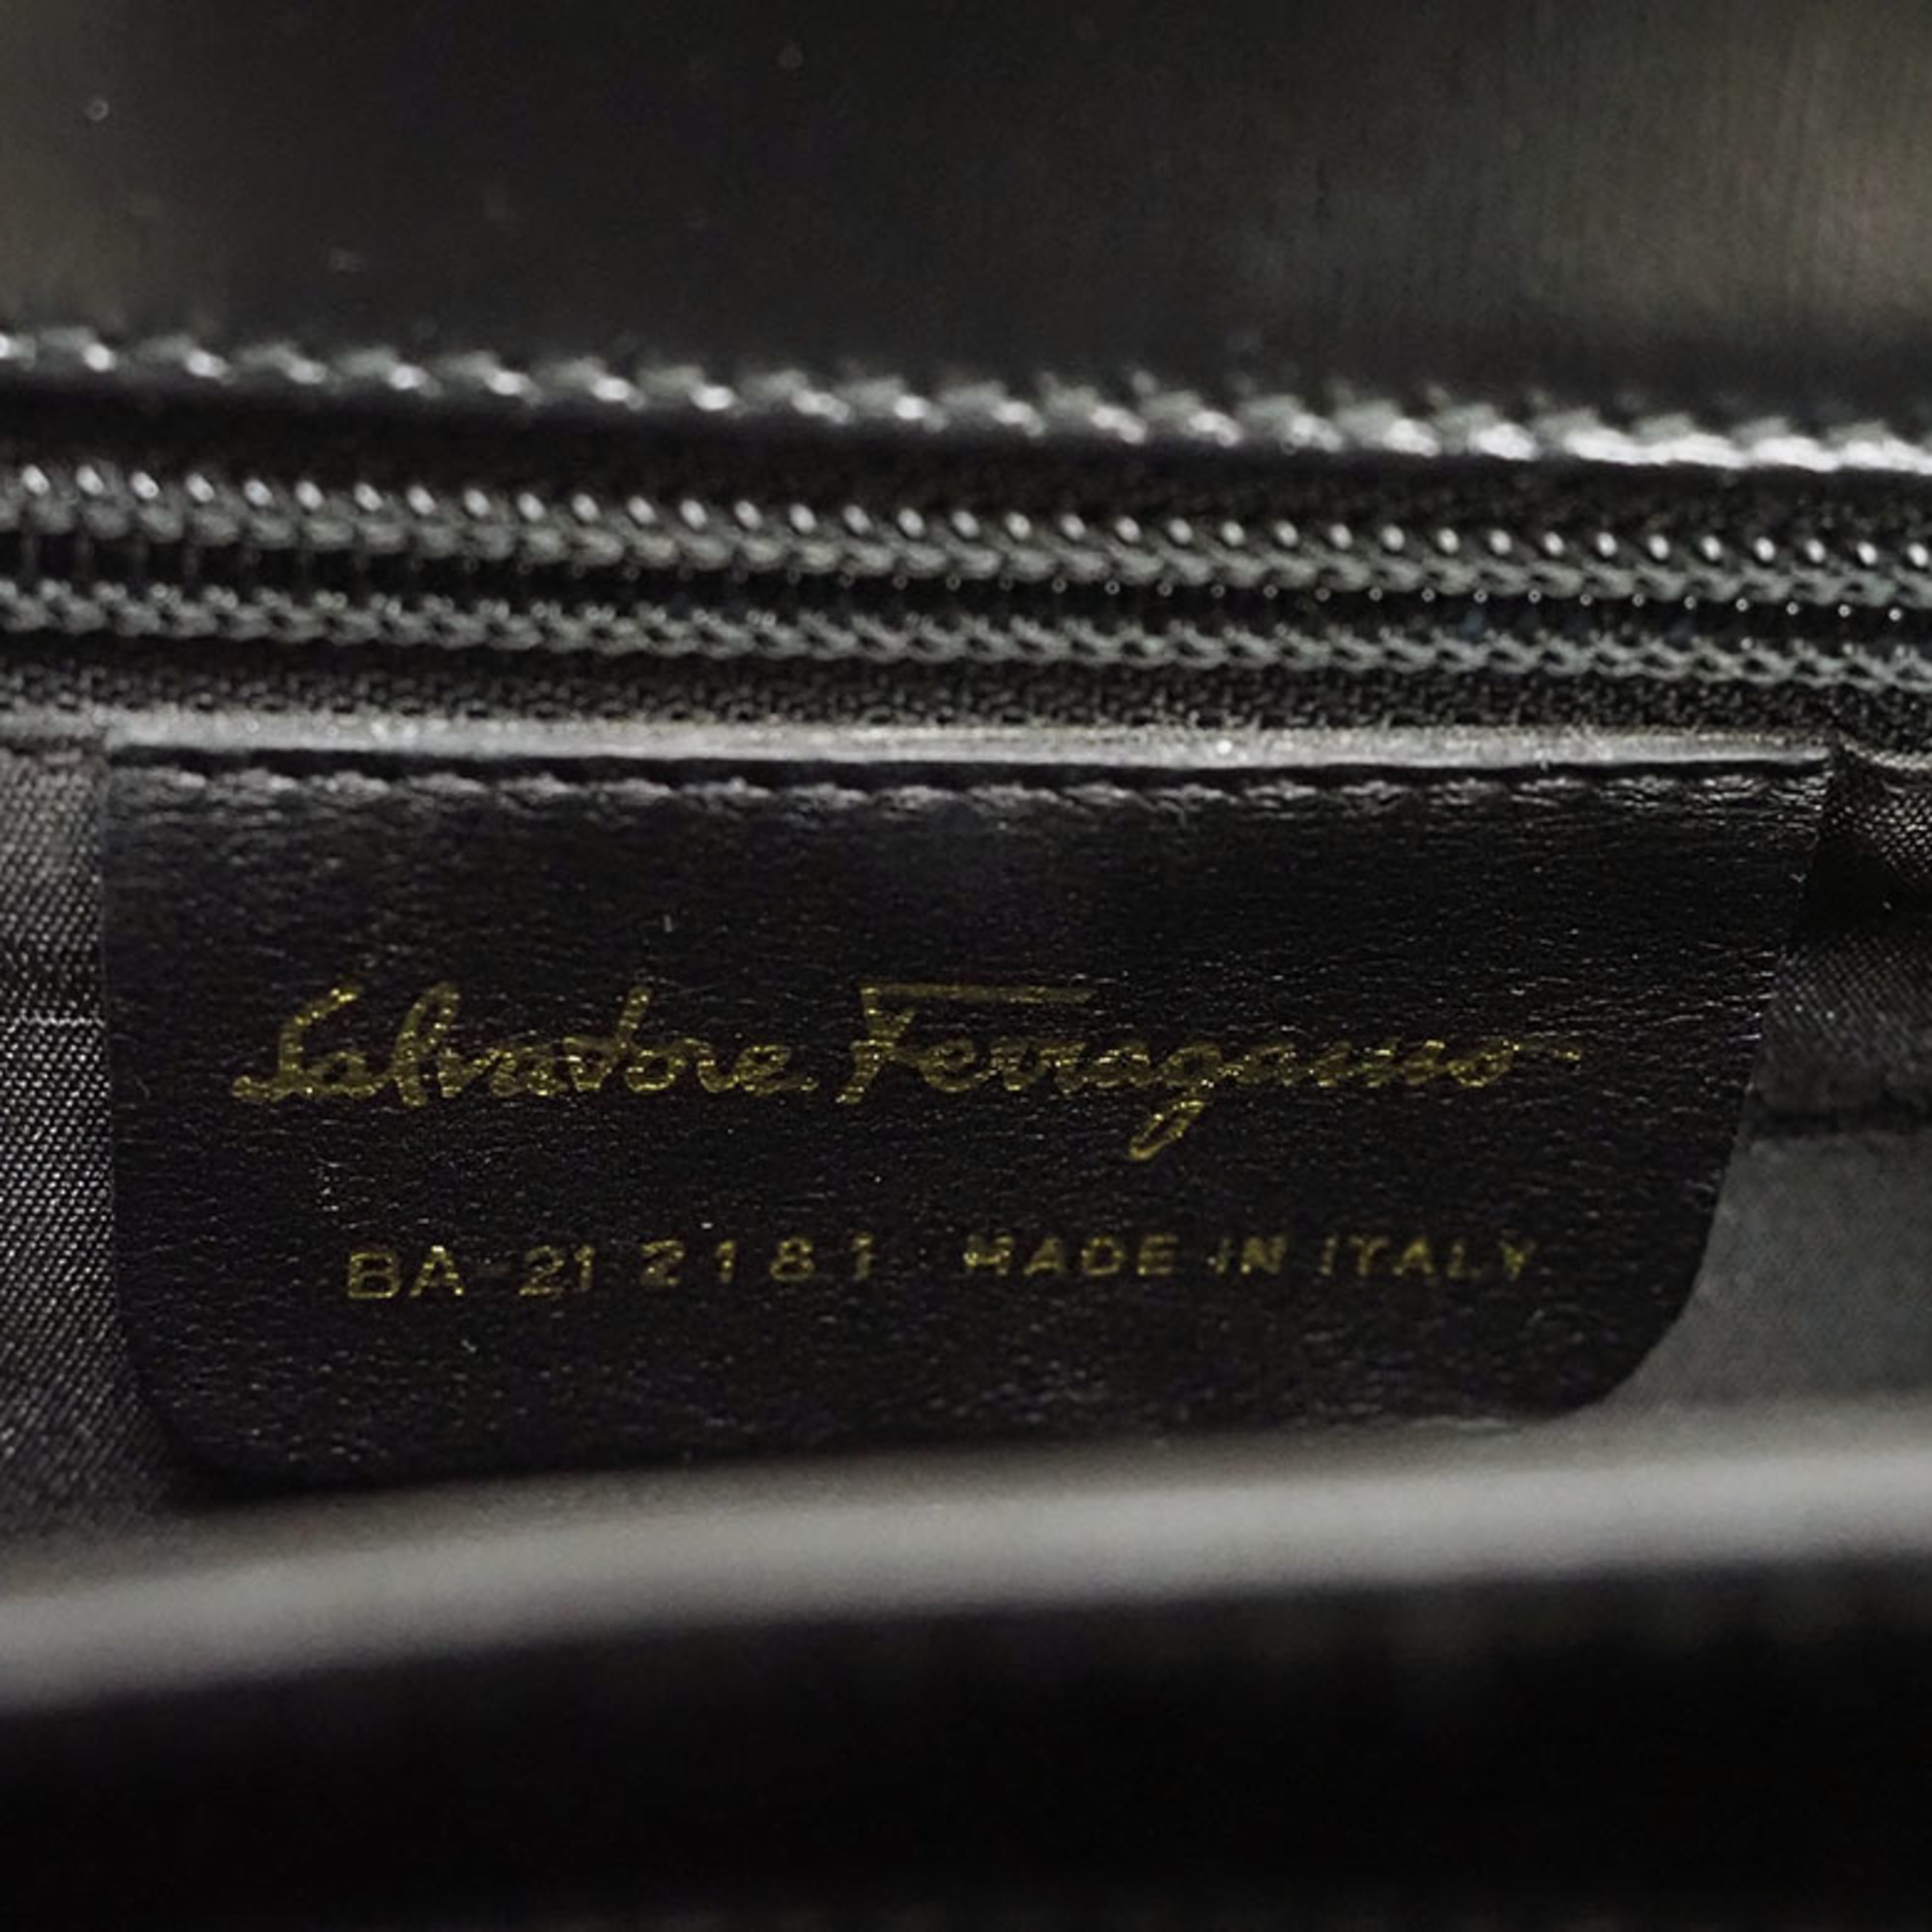 Salvatore Ferragamo Gancini handbag leather black ladies